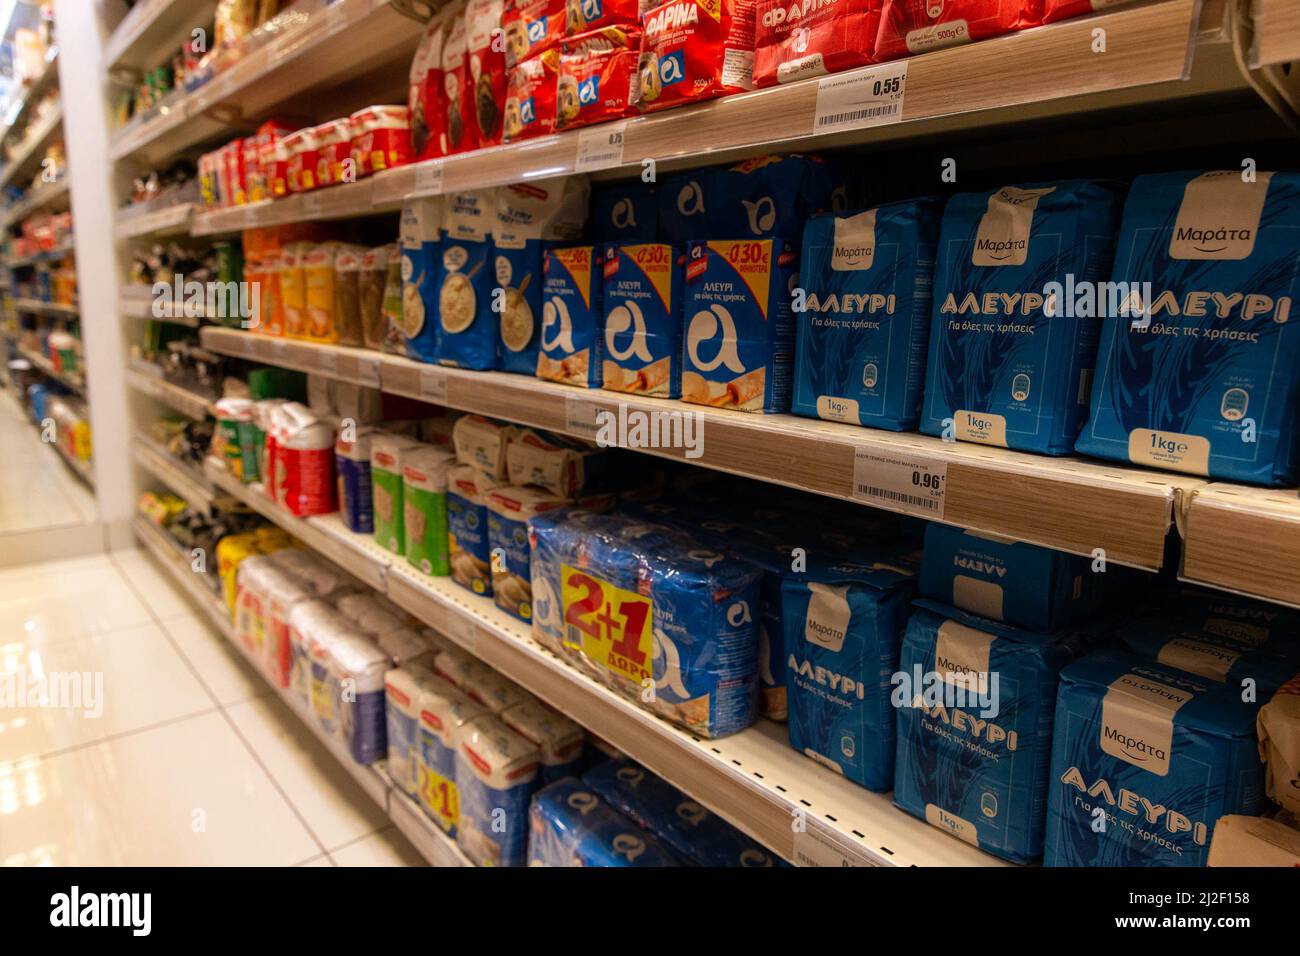 (220401) -- ATHEN, 1. April 2022 (Xinhua) -- das Foto vom 1. April 2022 zeigt ein Regal mit Mehlprodukten in einem Supermarkt in Athen, Griechenland. Jüngste Zahlen der Hellenischen Statistischen Behörde (ELSTAT) zeigten, dass die jährliche Inflationsrate Griechenlands im Februar auf 7,2 Prozent gestiegen ist und damit ein 26-Jahres-hoch erreicht hat. Handwerker und Händler (GSEVEE) fordern eine bevorstehende Senkung der Kraftstoffsteuern und eine Obergrenze für Strom- und Erdgaspreise sowie eine genaue Überwachung des Lebensmittelbestands des Landes, wie Sonnenblumenöl und Stockfoto